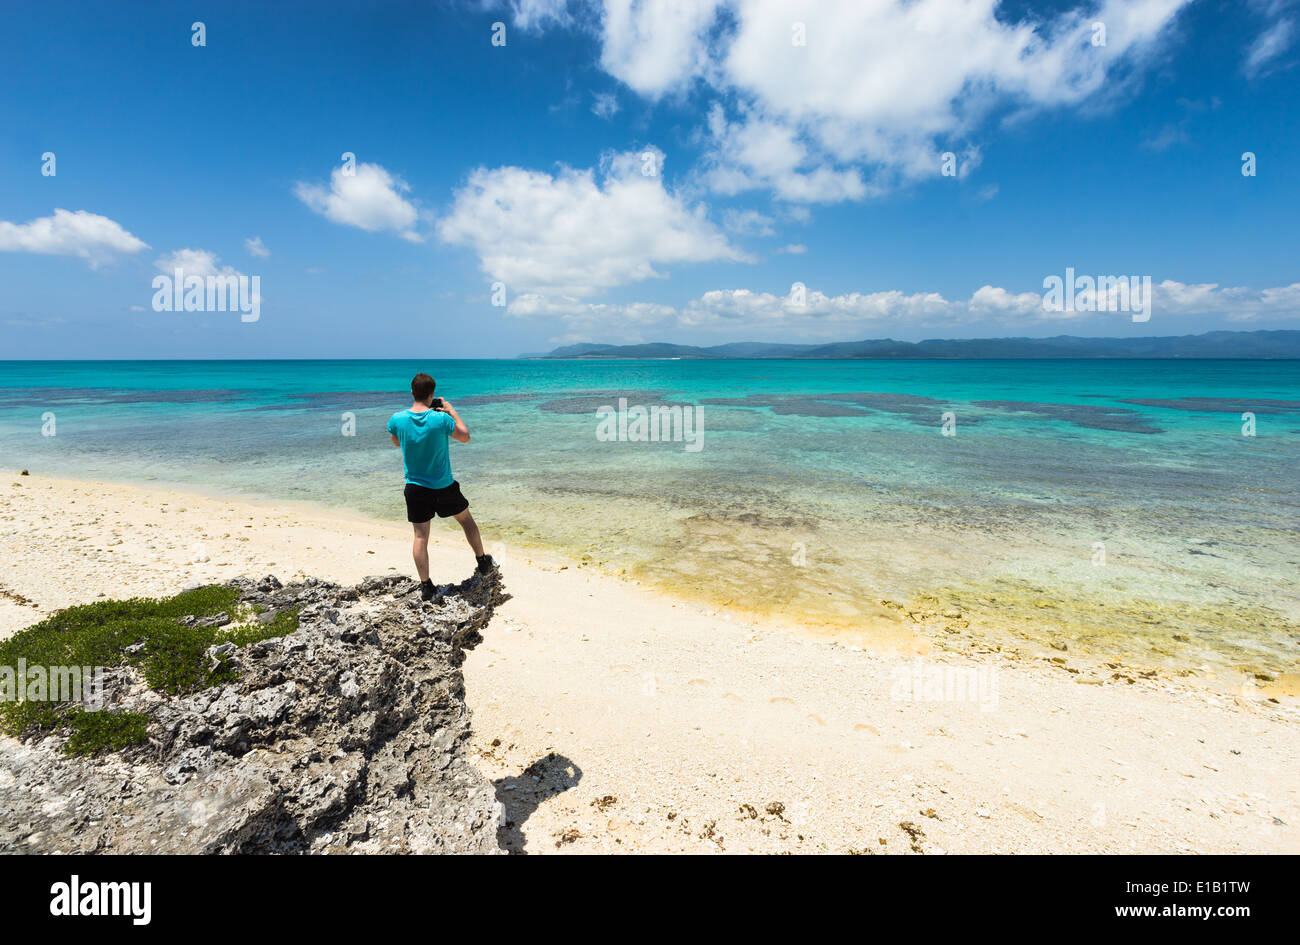 Menschen nehmen Foto von atemberaubenden tropischen Sandstrand voll von gesunden Korallen, Yaeyama Inseln, Okinawa, Japan Stockfoto